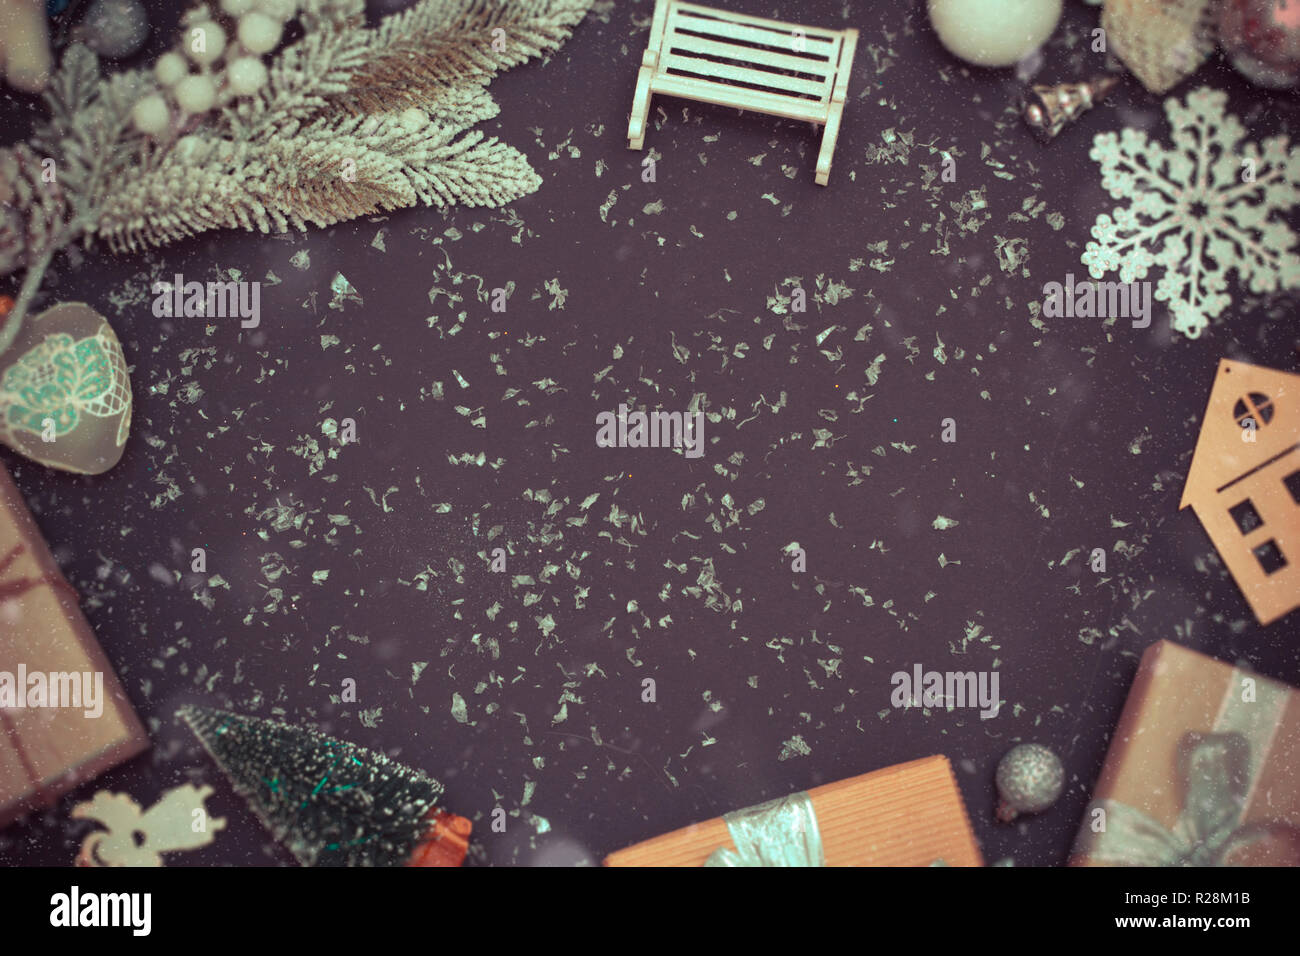 Weihnachtsferien schwarzer Hintergrund mit Kopie Platz für Ihren Text. Stockfoto